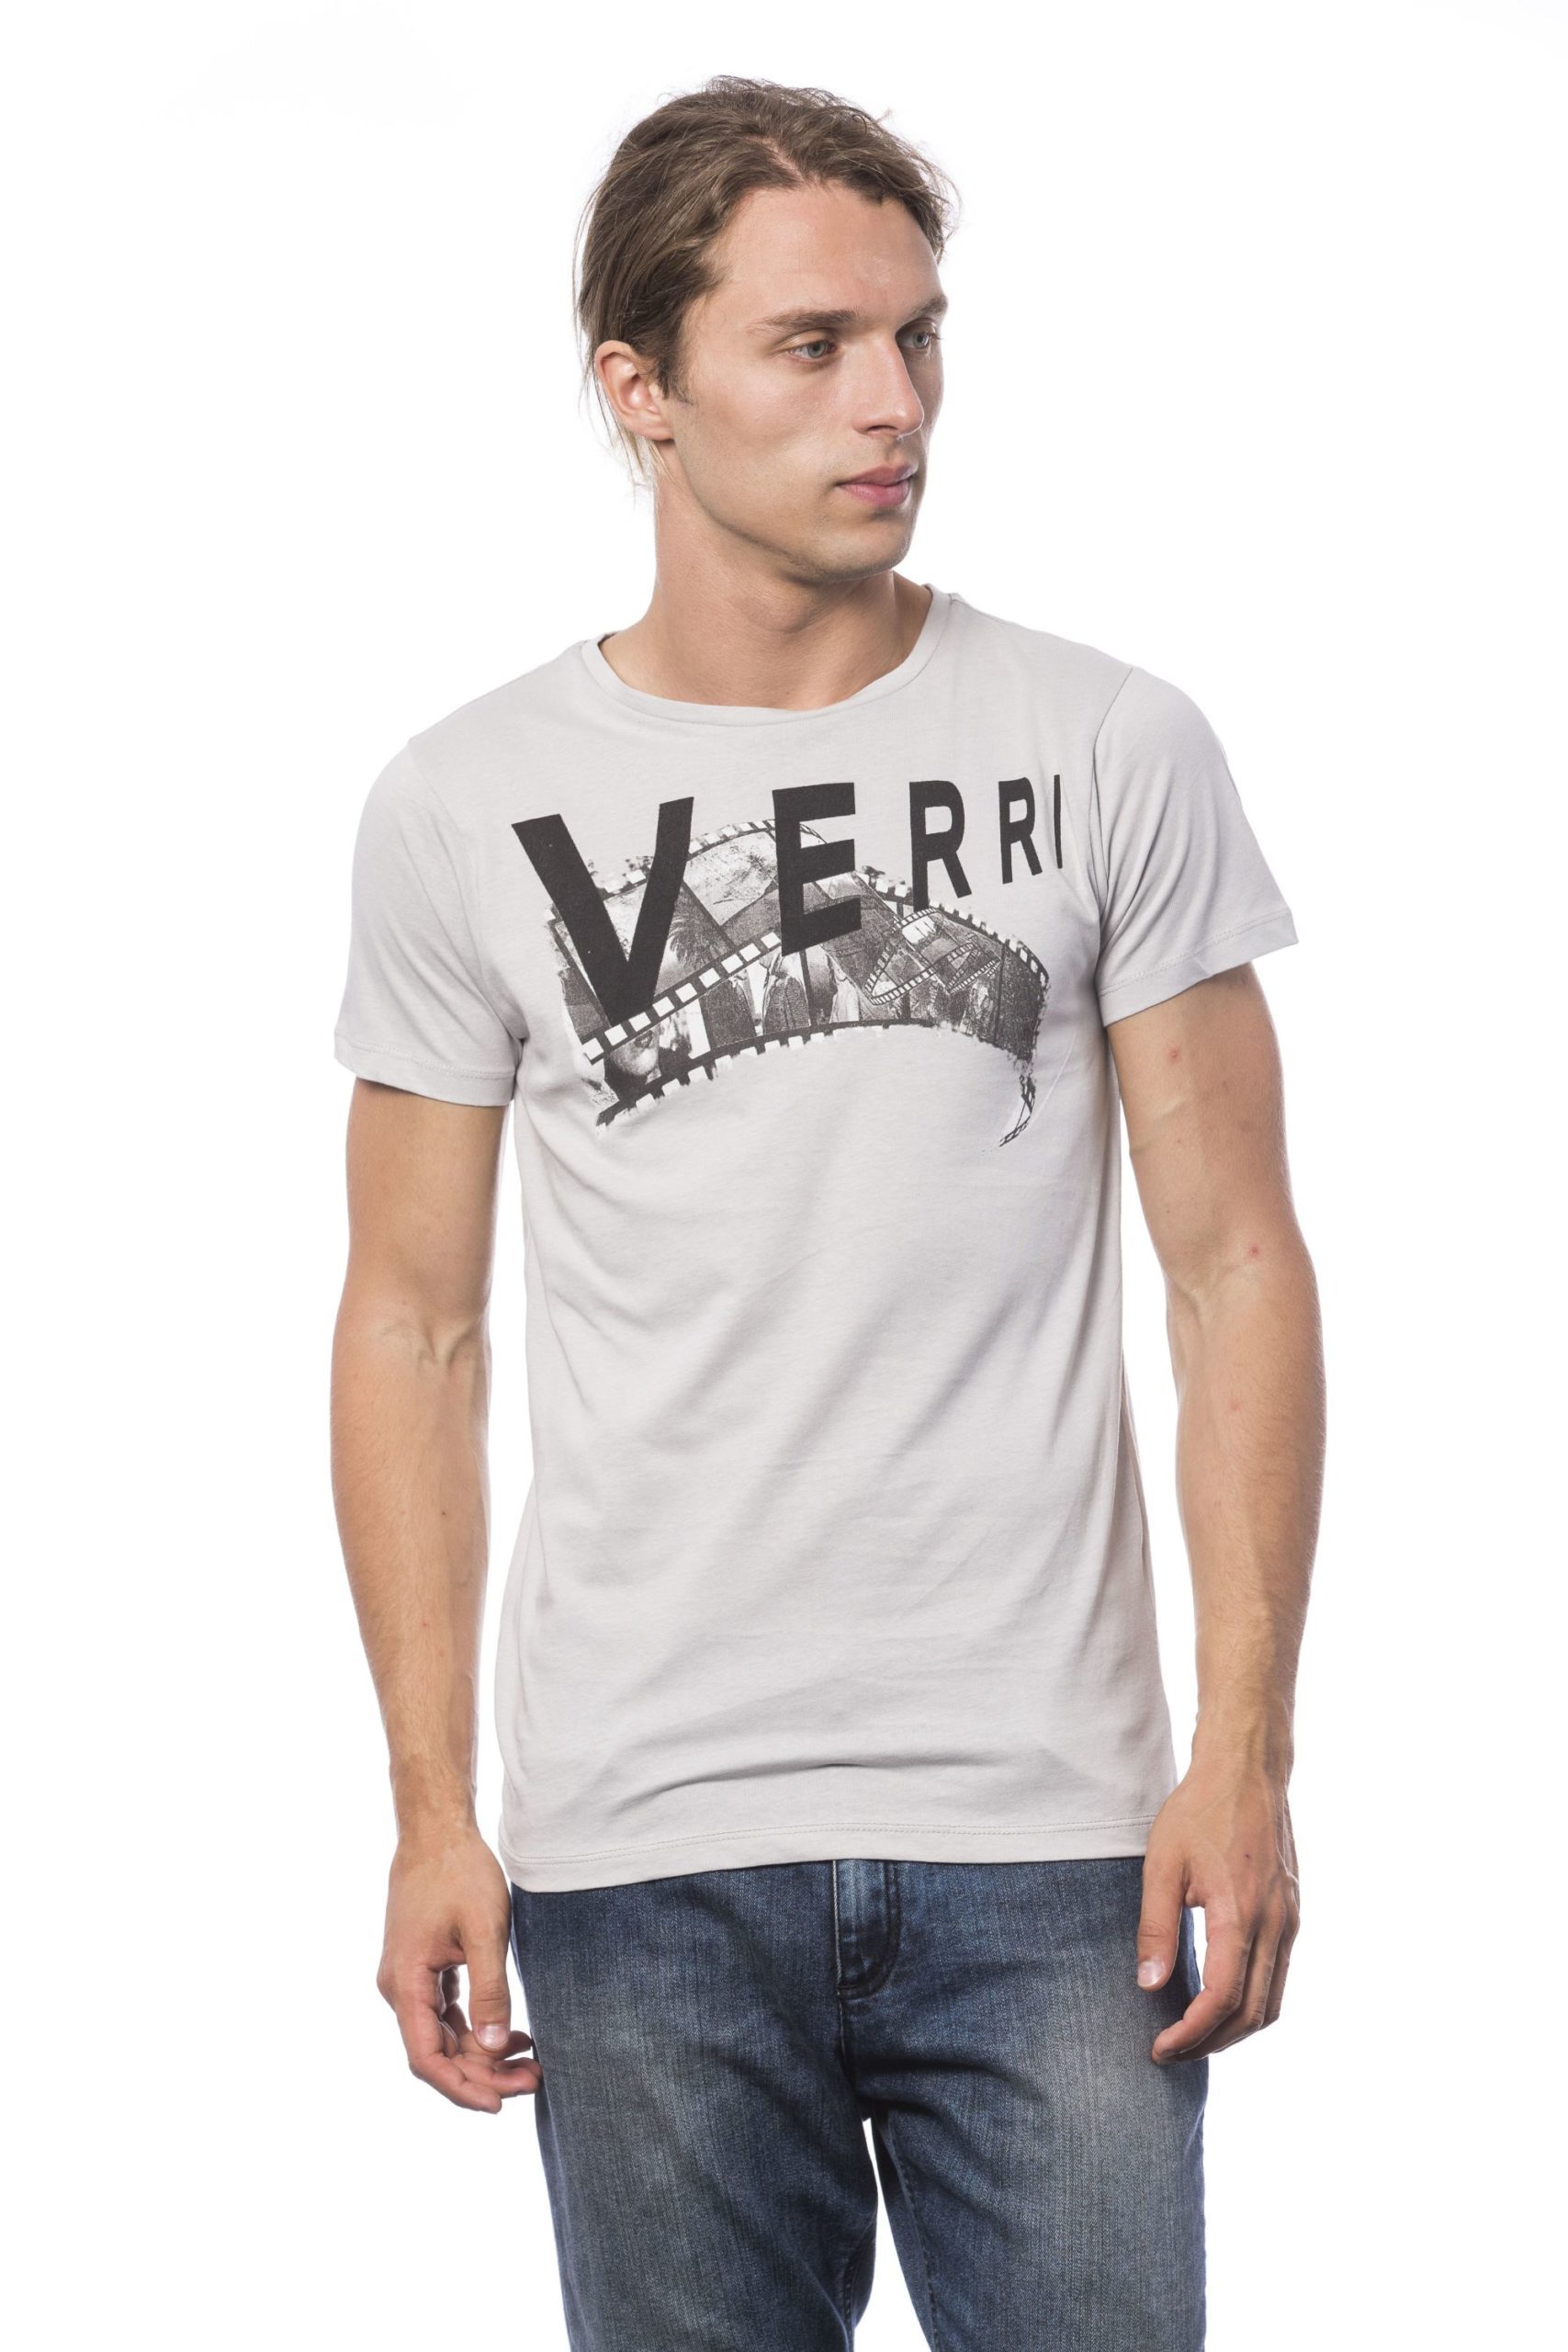 Verri Men's Grigioperla T-Shirt Gray VE678759 - XXL